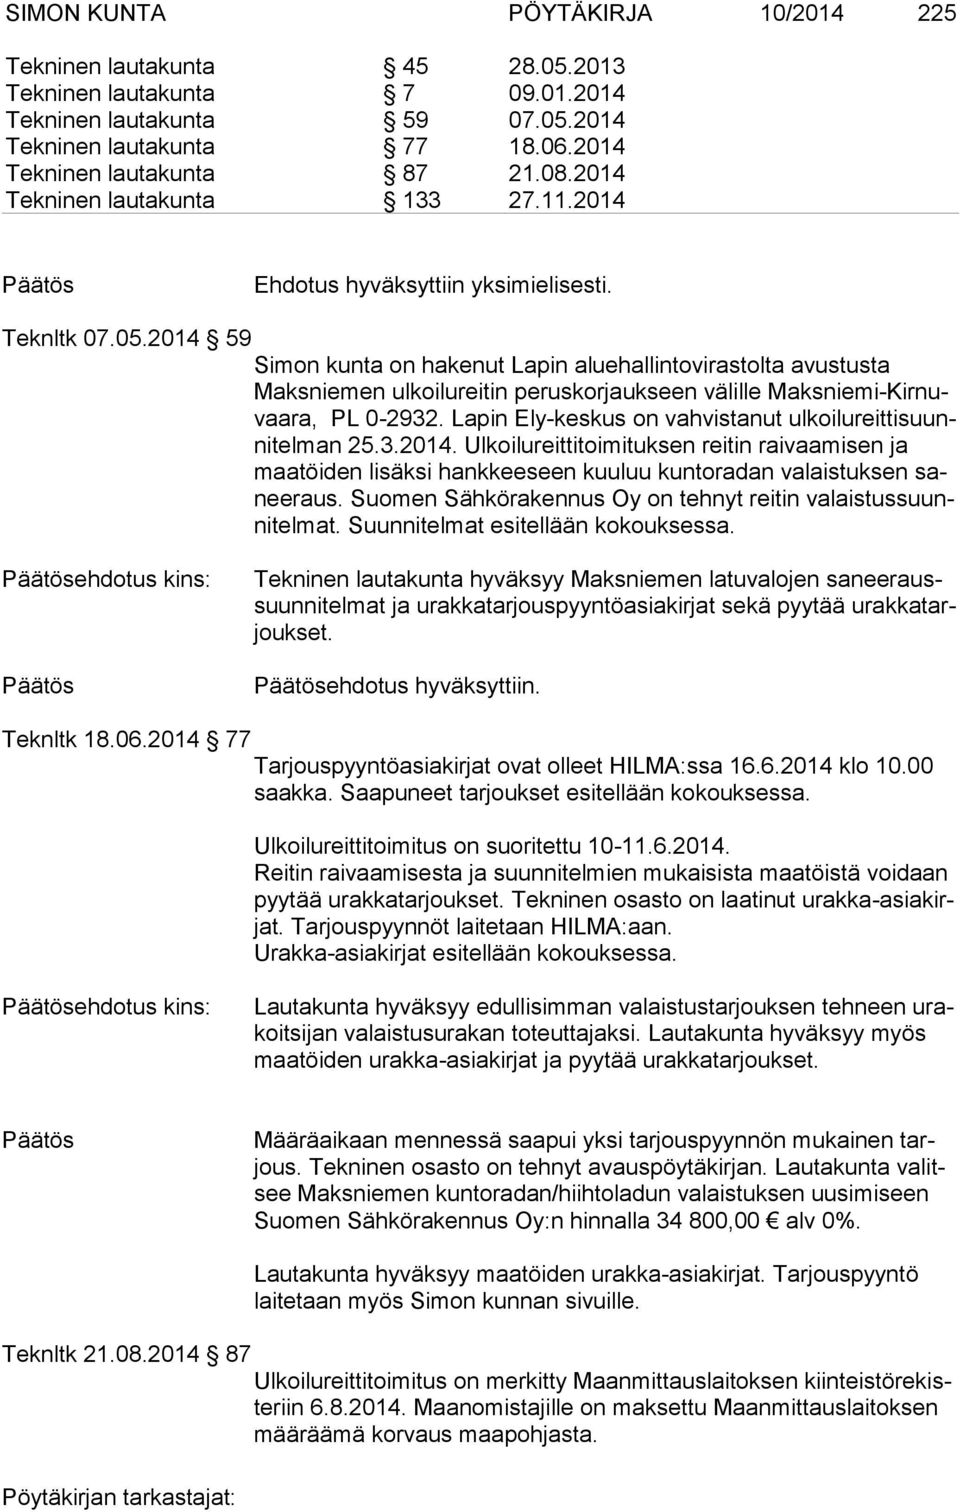 2014 59 Simon kunta on hakenut Lapin aluehallintovirastolta avustusta Maks nie men ul koi lu rei tin peruskorjaukseen välille Maks nie mi-kir nuvaa ra, PL 0-2932.